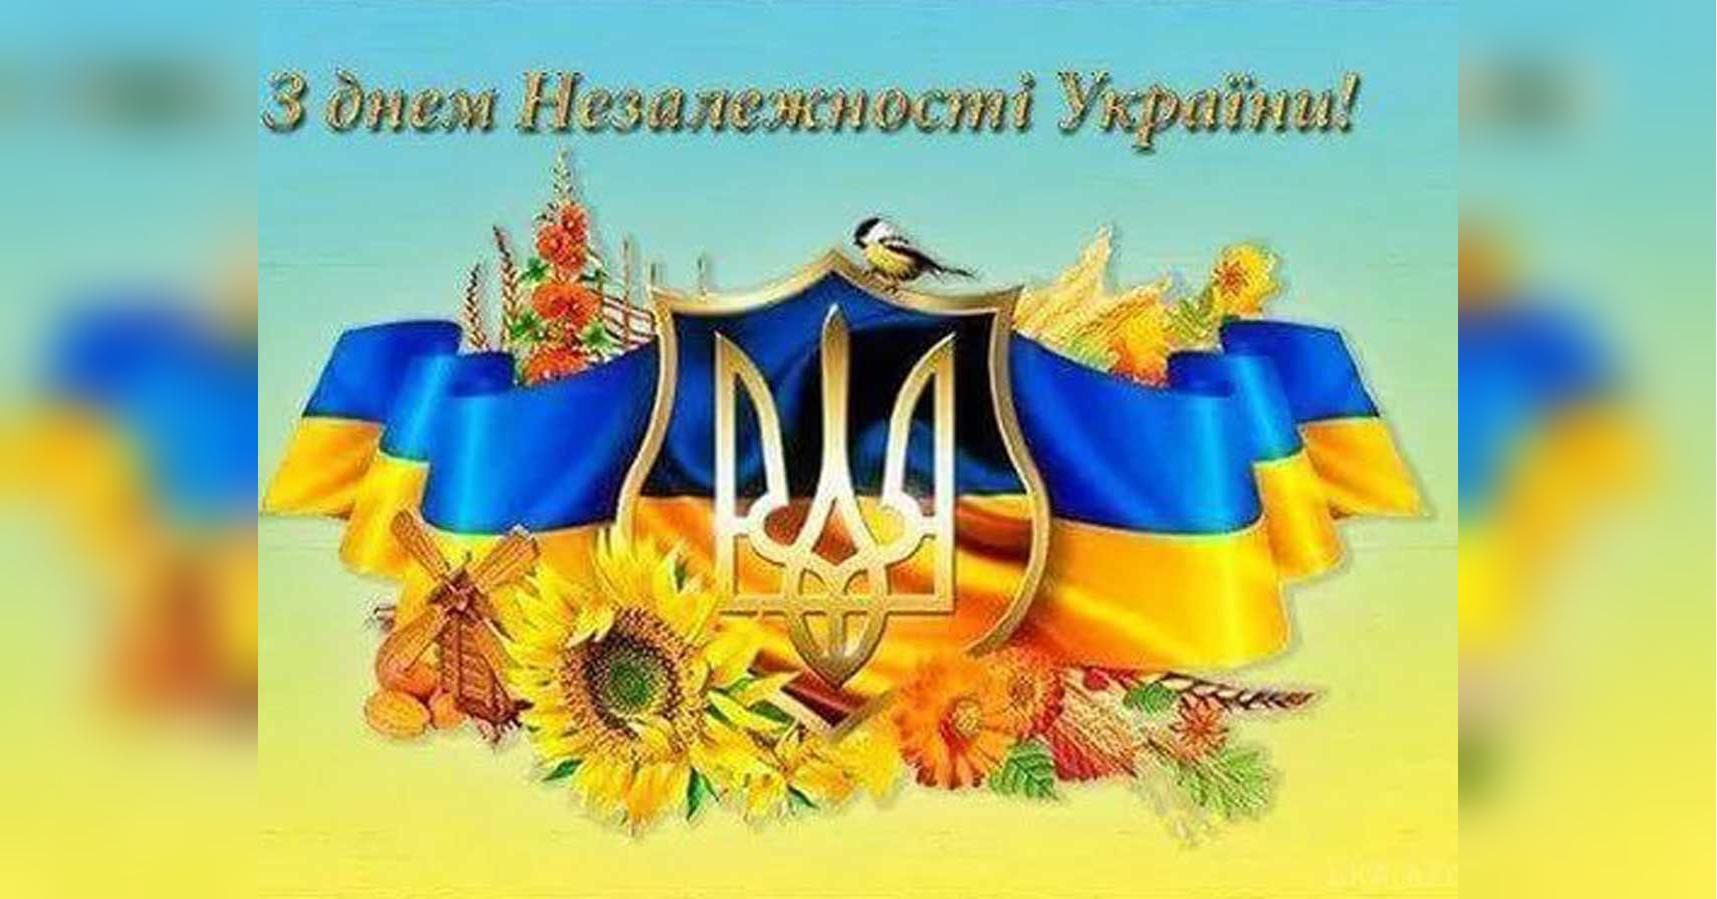 С Днем независимости Украины! Яркие картинки и открытки с пожеланиями мира